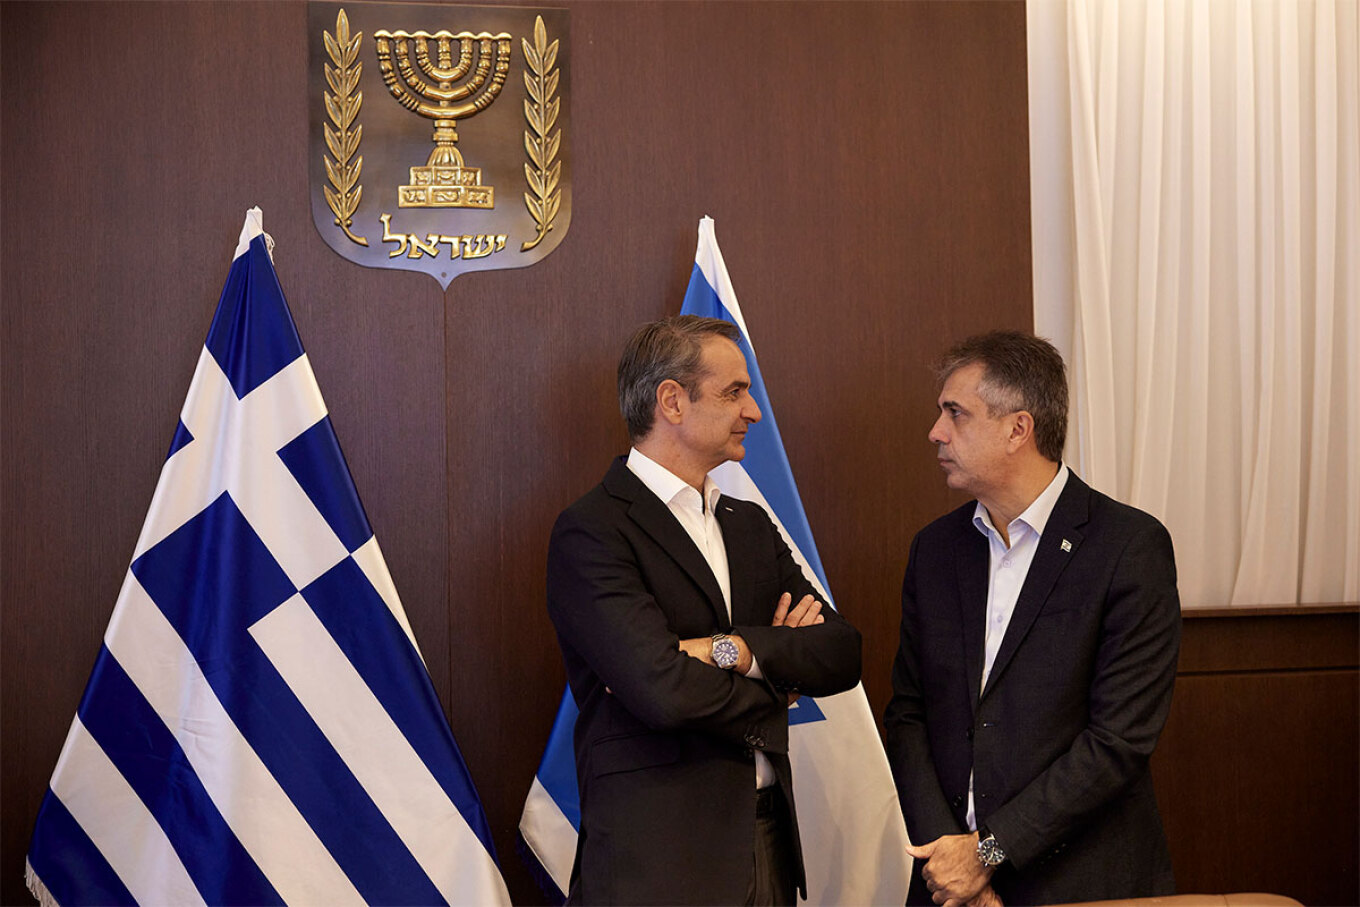 Με τον Πρωθυπουργό του Ισραήλ, Μπενιαμίν Νετανιάχου, συναντήθηκε ο Έλληνας Πρωθυπουργός, Κυριάκος Μητσοτάκης, στην Ιερουσαλήμ. Ο Κυριάκος Μητσοτάκης έφτασε νωρίς το πρωί στο Ισραήλ, επιβεβαιώνοντας τις πληροφορίες που υπήρχαν από το απόγευμα της Κυριακής ότι σήμερα θα πραγματοποιήσει το ταξίδι που δεν είχε πραγματοποιηθεί την προηγούμενη εβδομάδα. Στη συνάντηση συμμετείχαν από την ελληνική πλευρά, ο υπουργός Εξωτερικών Γιώργος Γεραπετρίτης καθώς και ο υπουργός Επικρατείας Σταύρος Παπασταύρου.  Ο Κυριάκος Μη